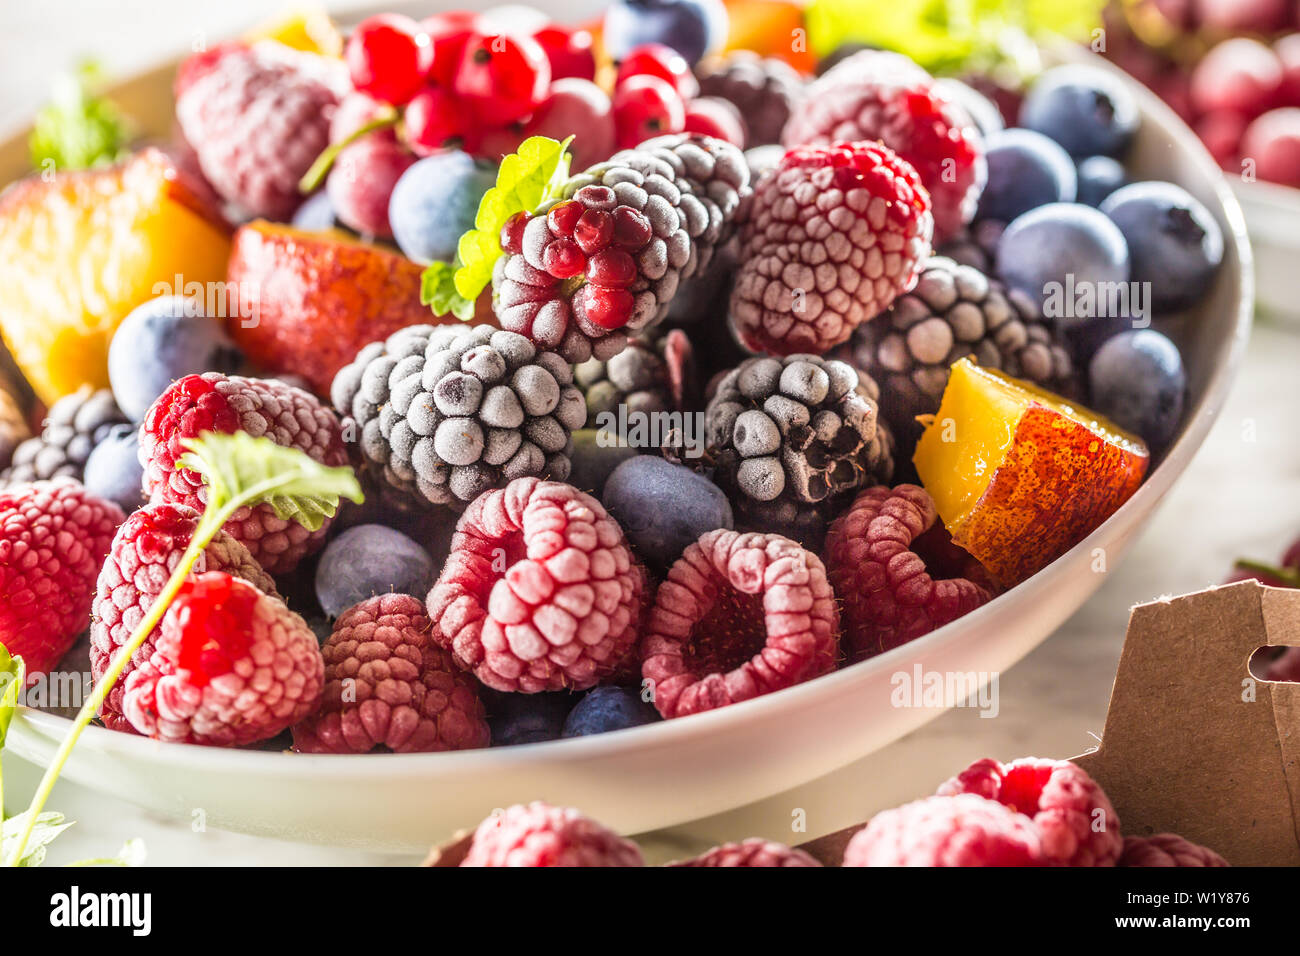 https://c8.alamy.com/compes/w1y876/las-frutas-congeladas-blackberry-arandanos-grosellas-frambuesa-melocoton-y-hierbas-melissa-w1y876.jpg